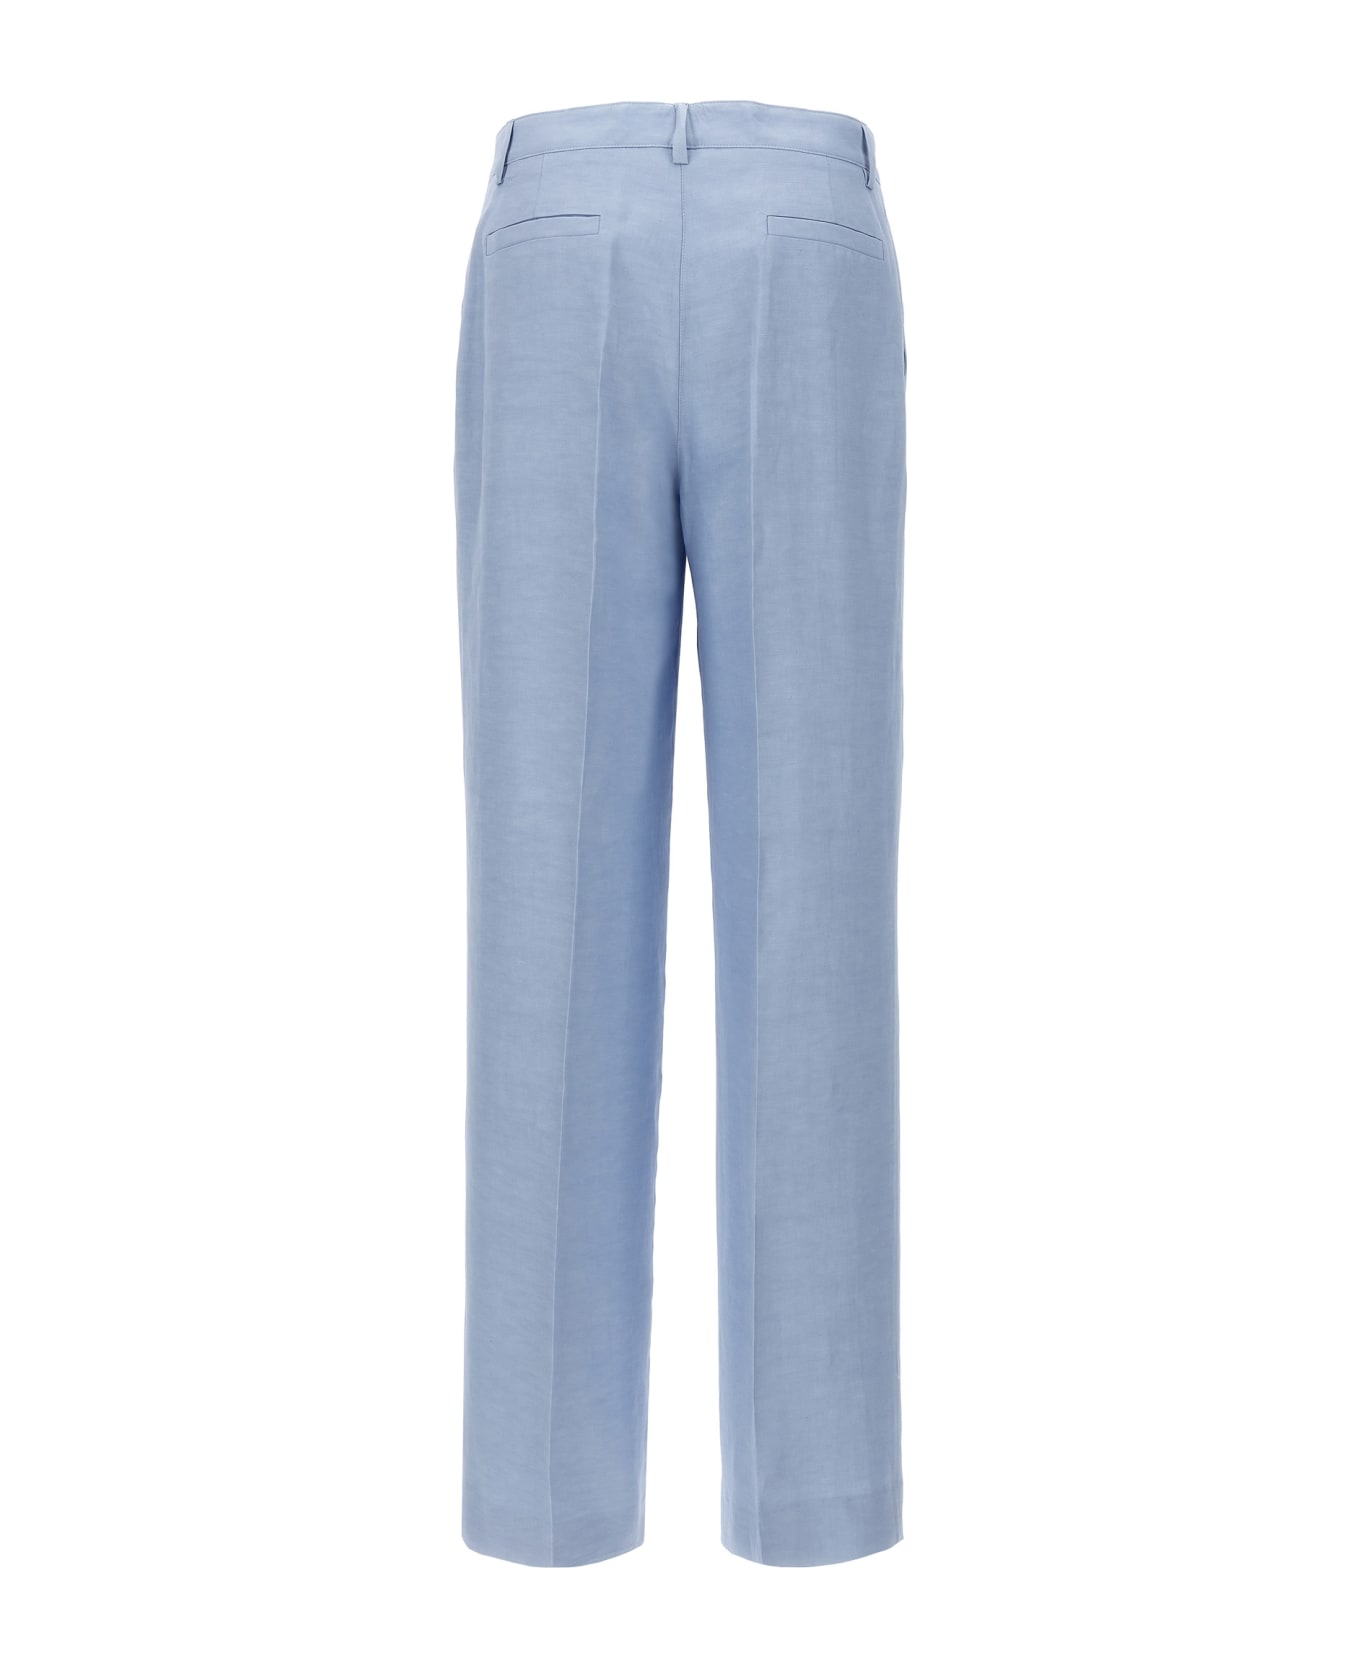 Parosh Smart Pants - Azzurro Polvere ボトムス